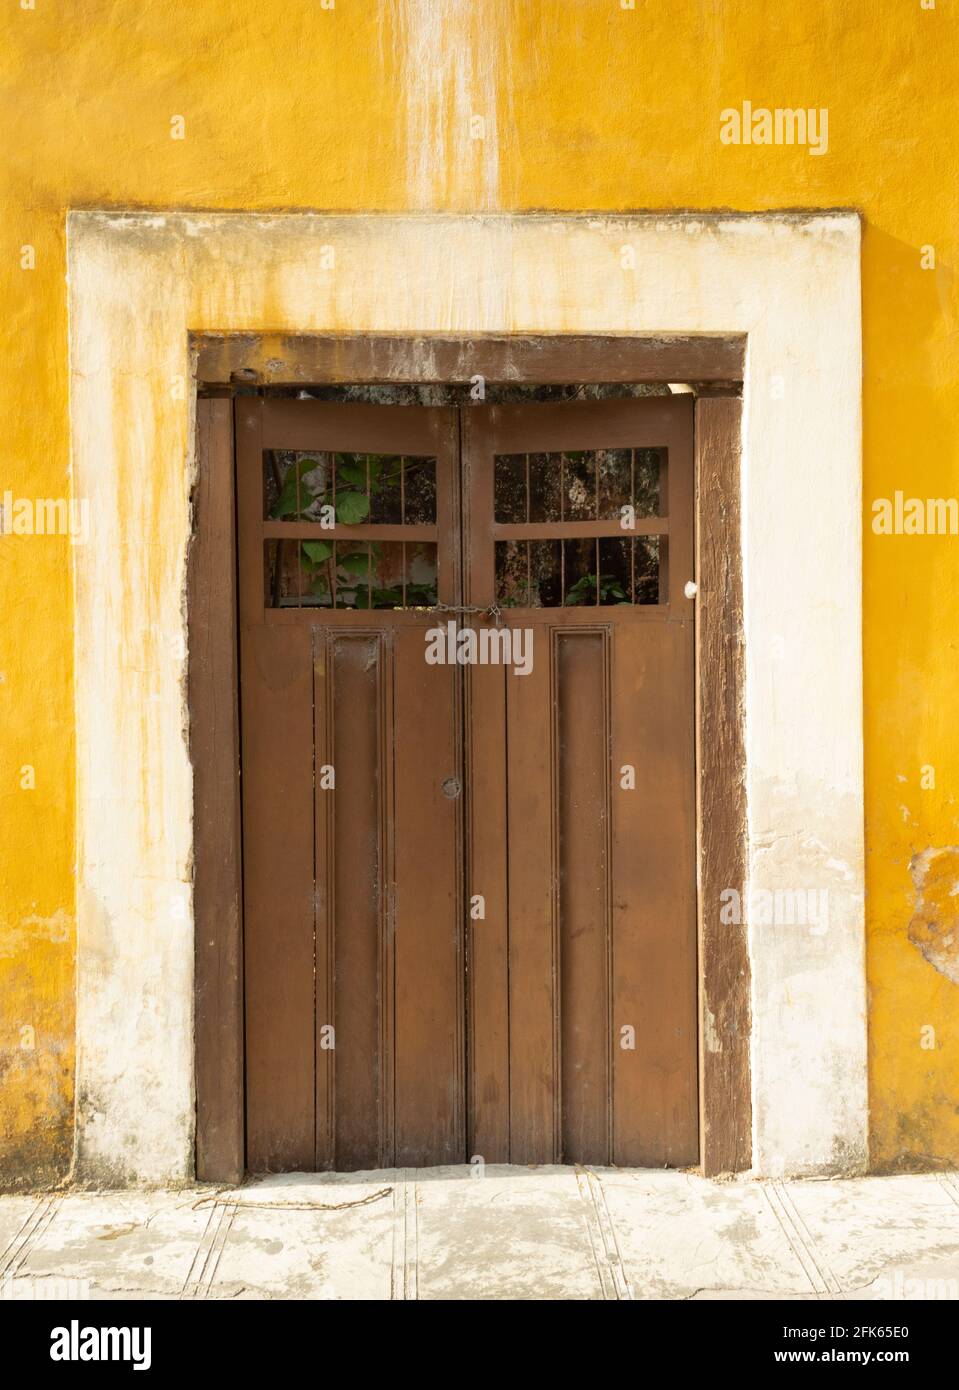 Izamal door at abandoned house. Yucatan, Mexico. Stock Photo